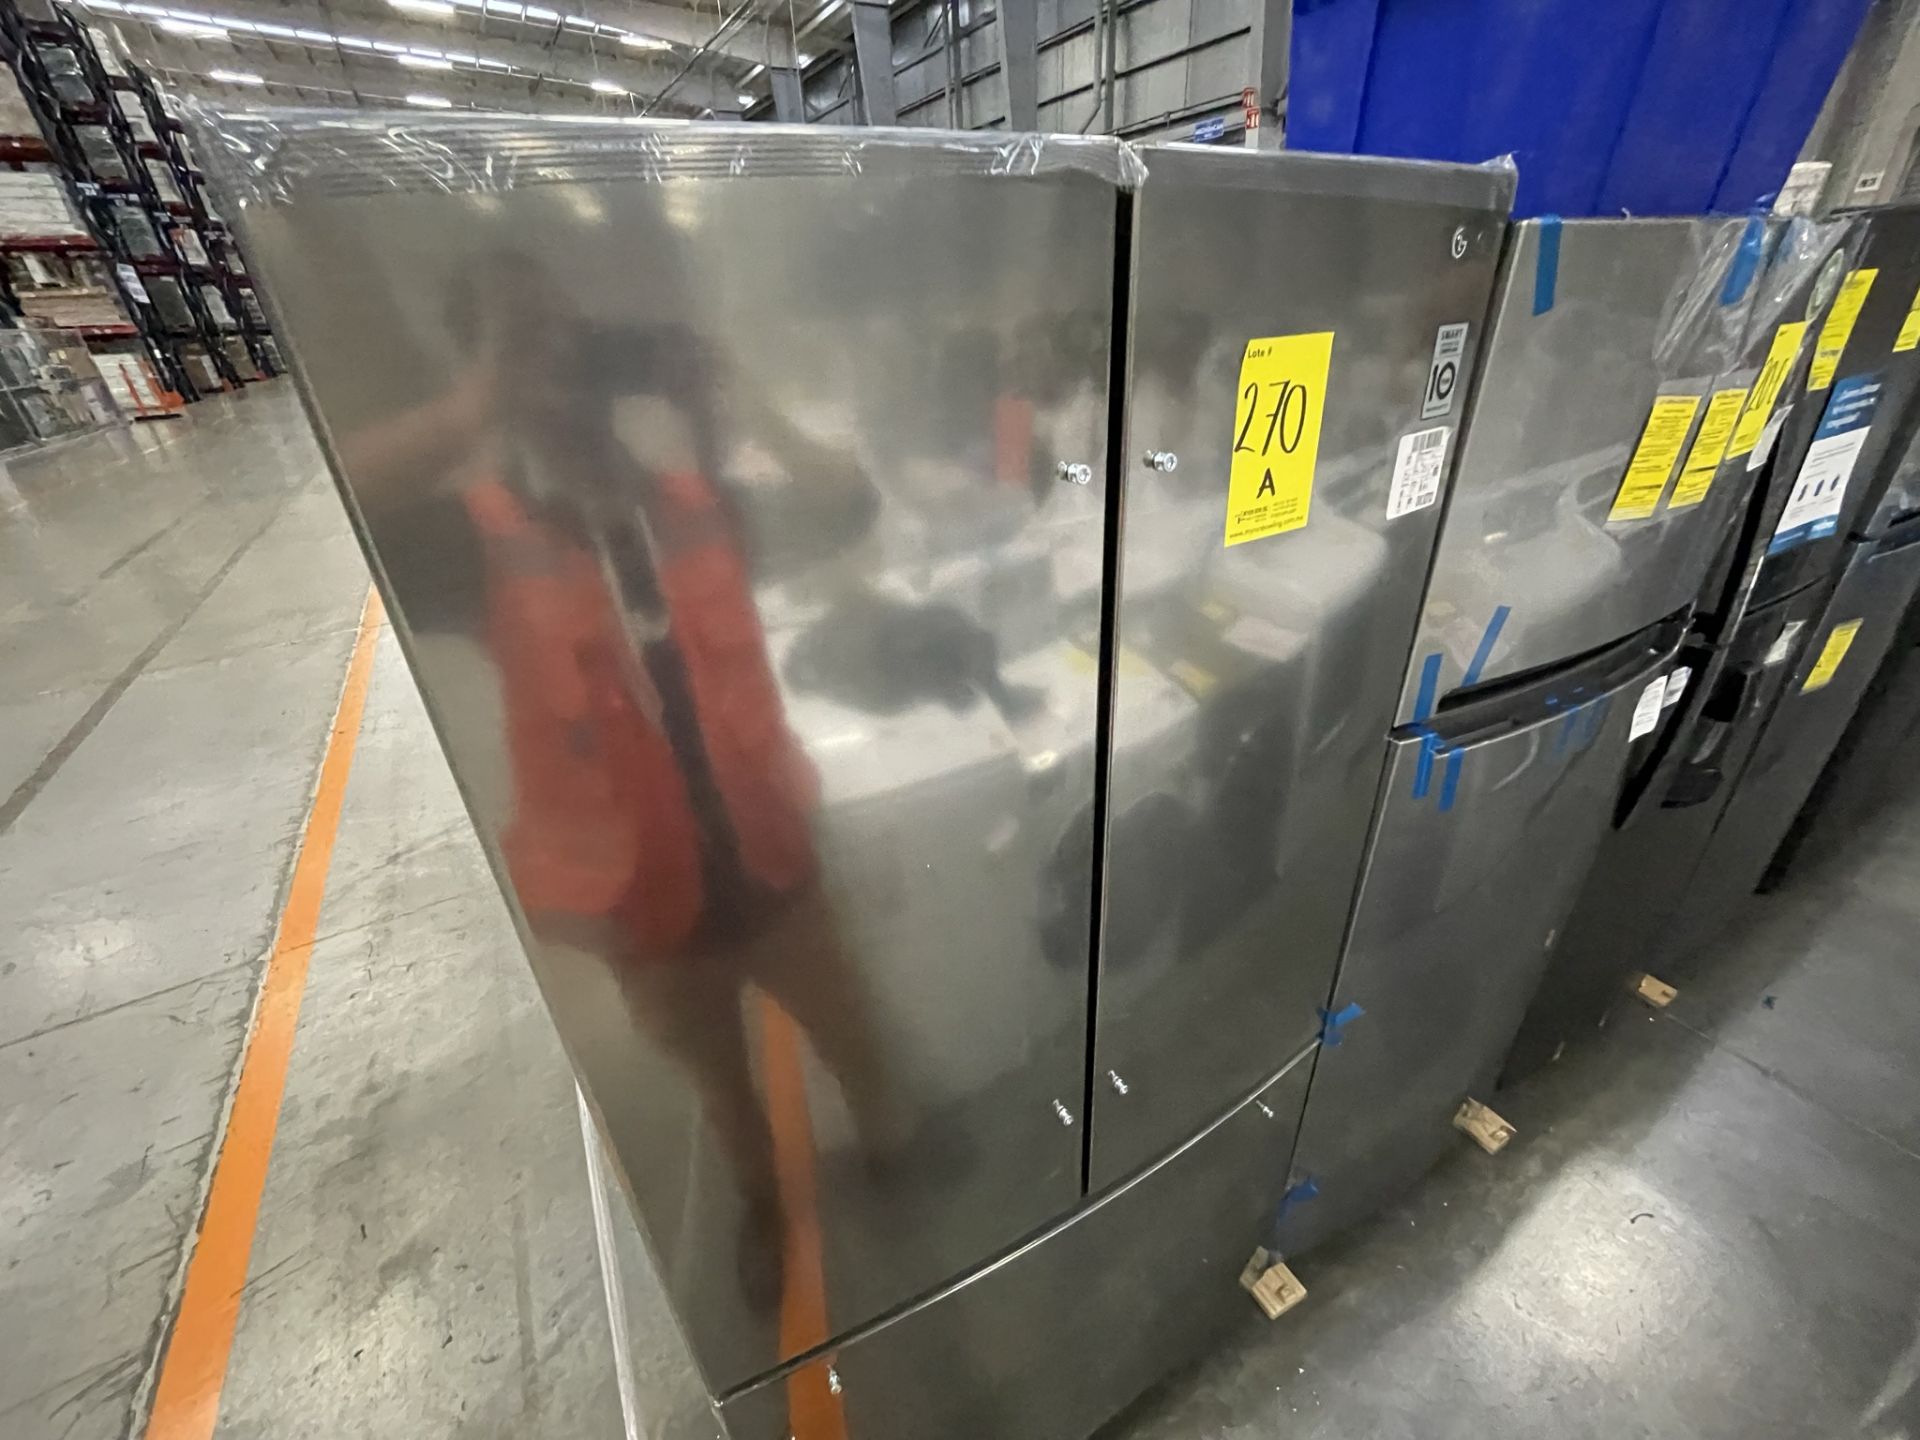 (EQUIPO NUEVO) 1 Refrigerador Marca LG, Modelo GM29BP, Serie LGM237, Color Gris, LB- 623228 (Nuevo, - Image 6 of 8